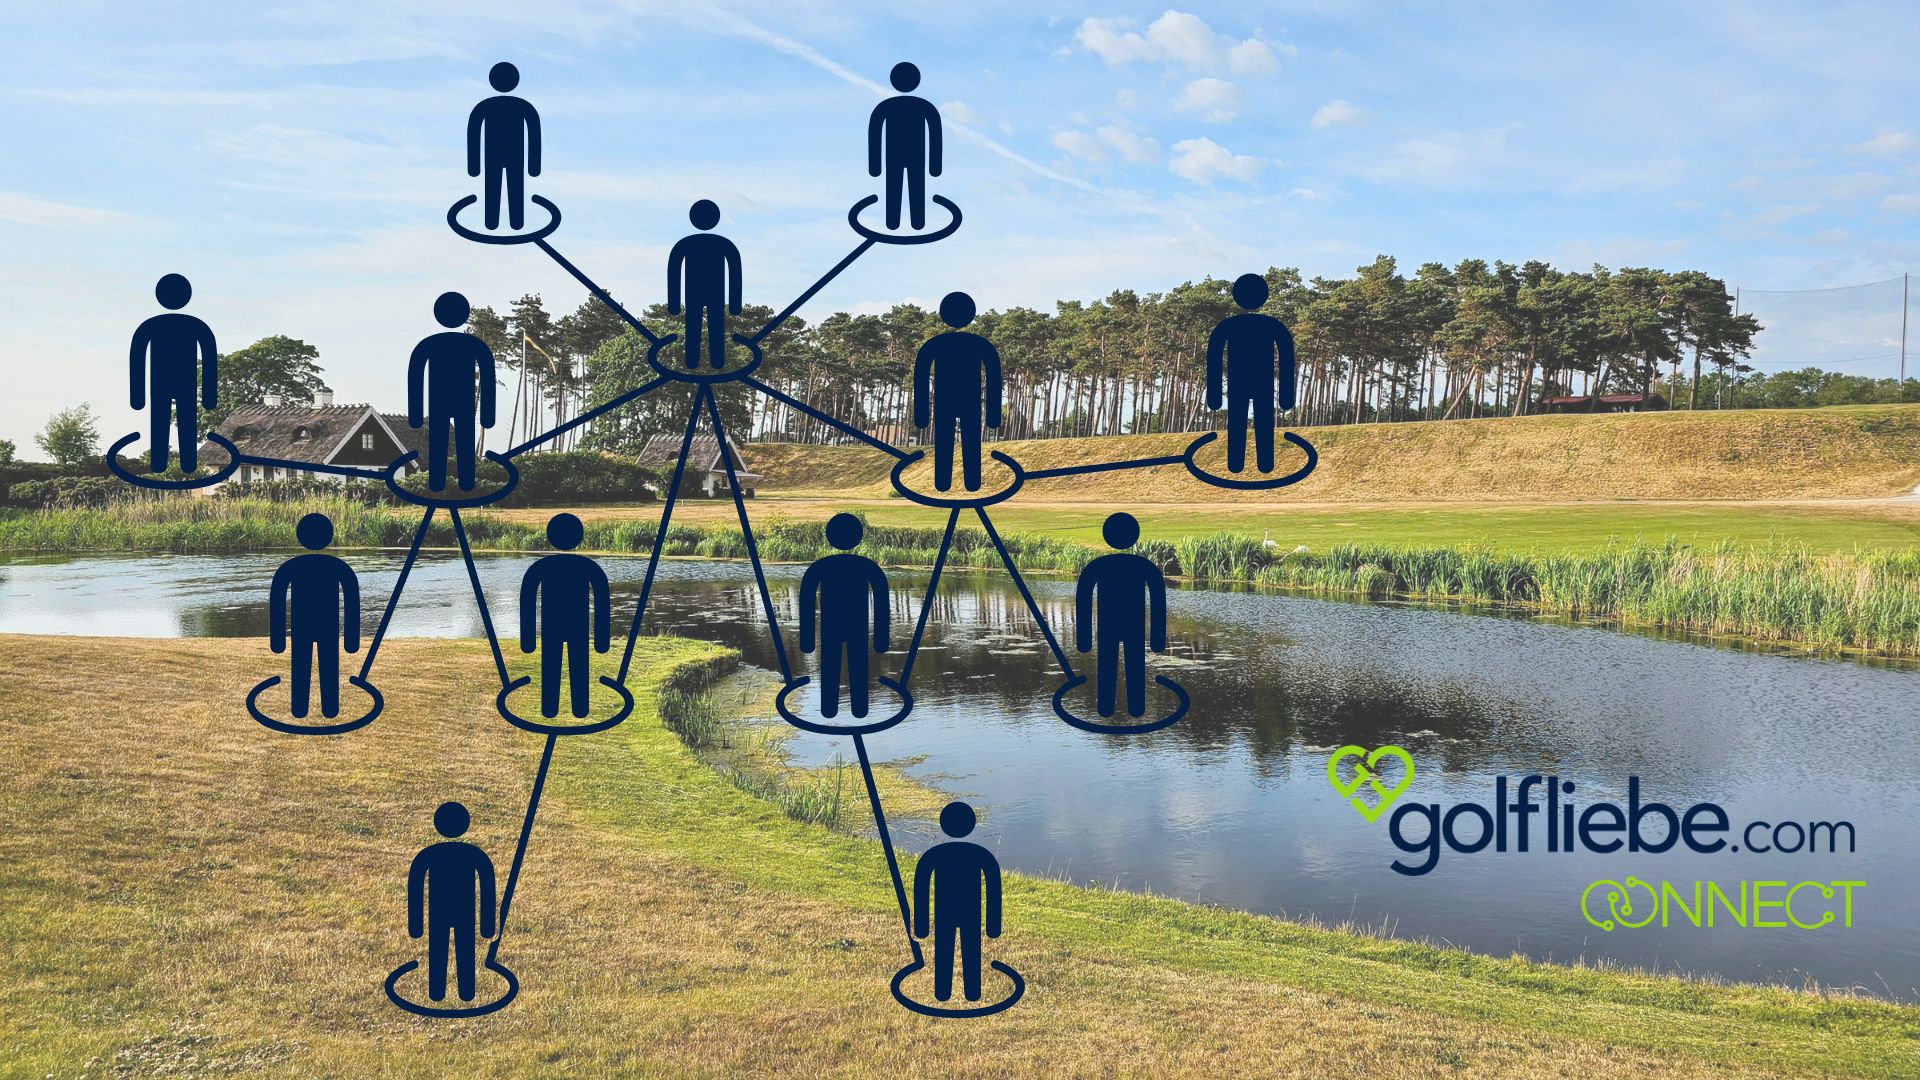 Golfliebe.com connect Wir verbinden Menschen